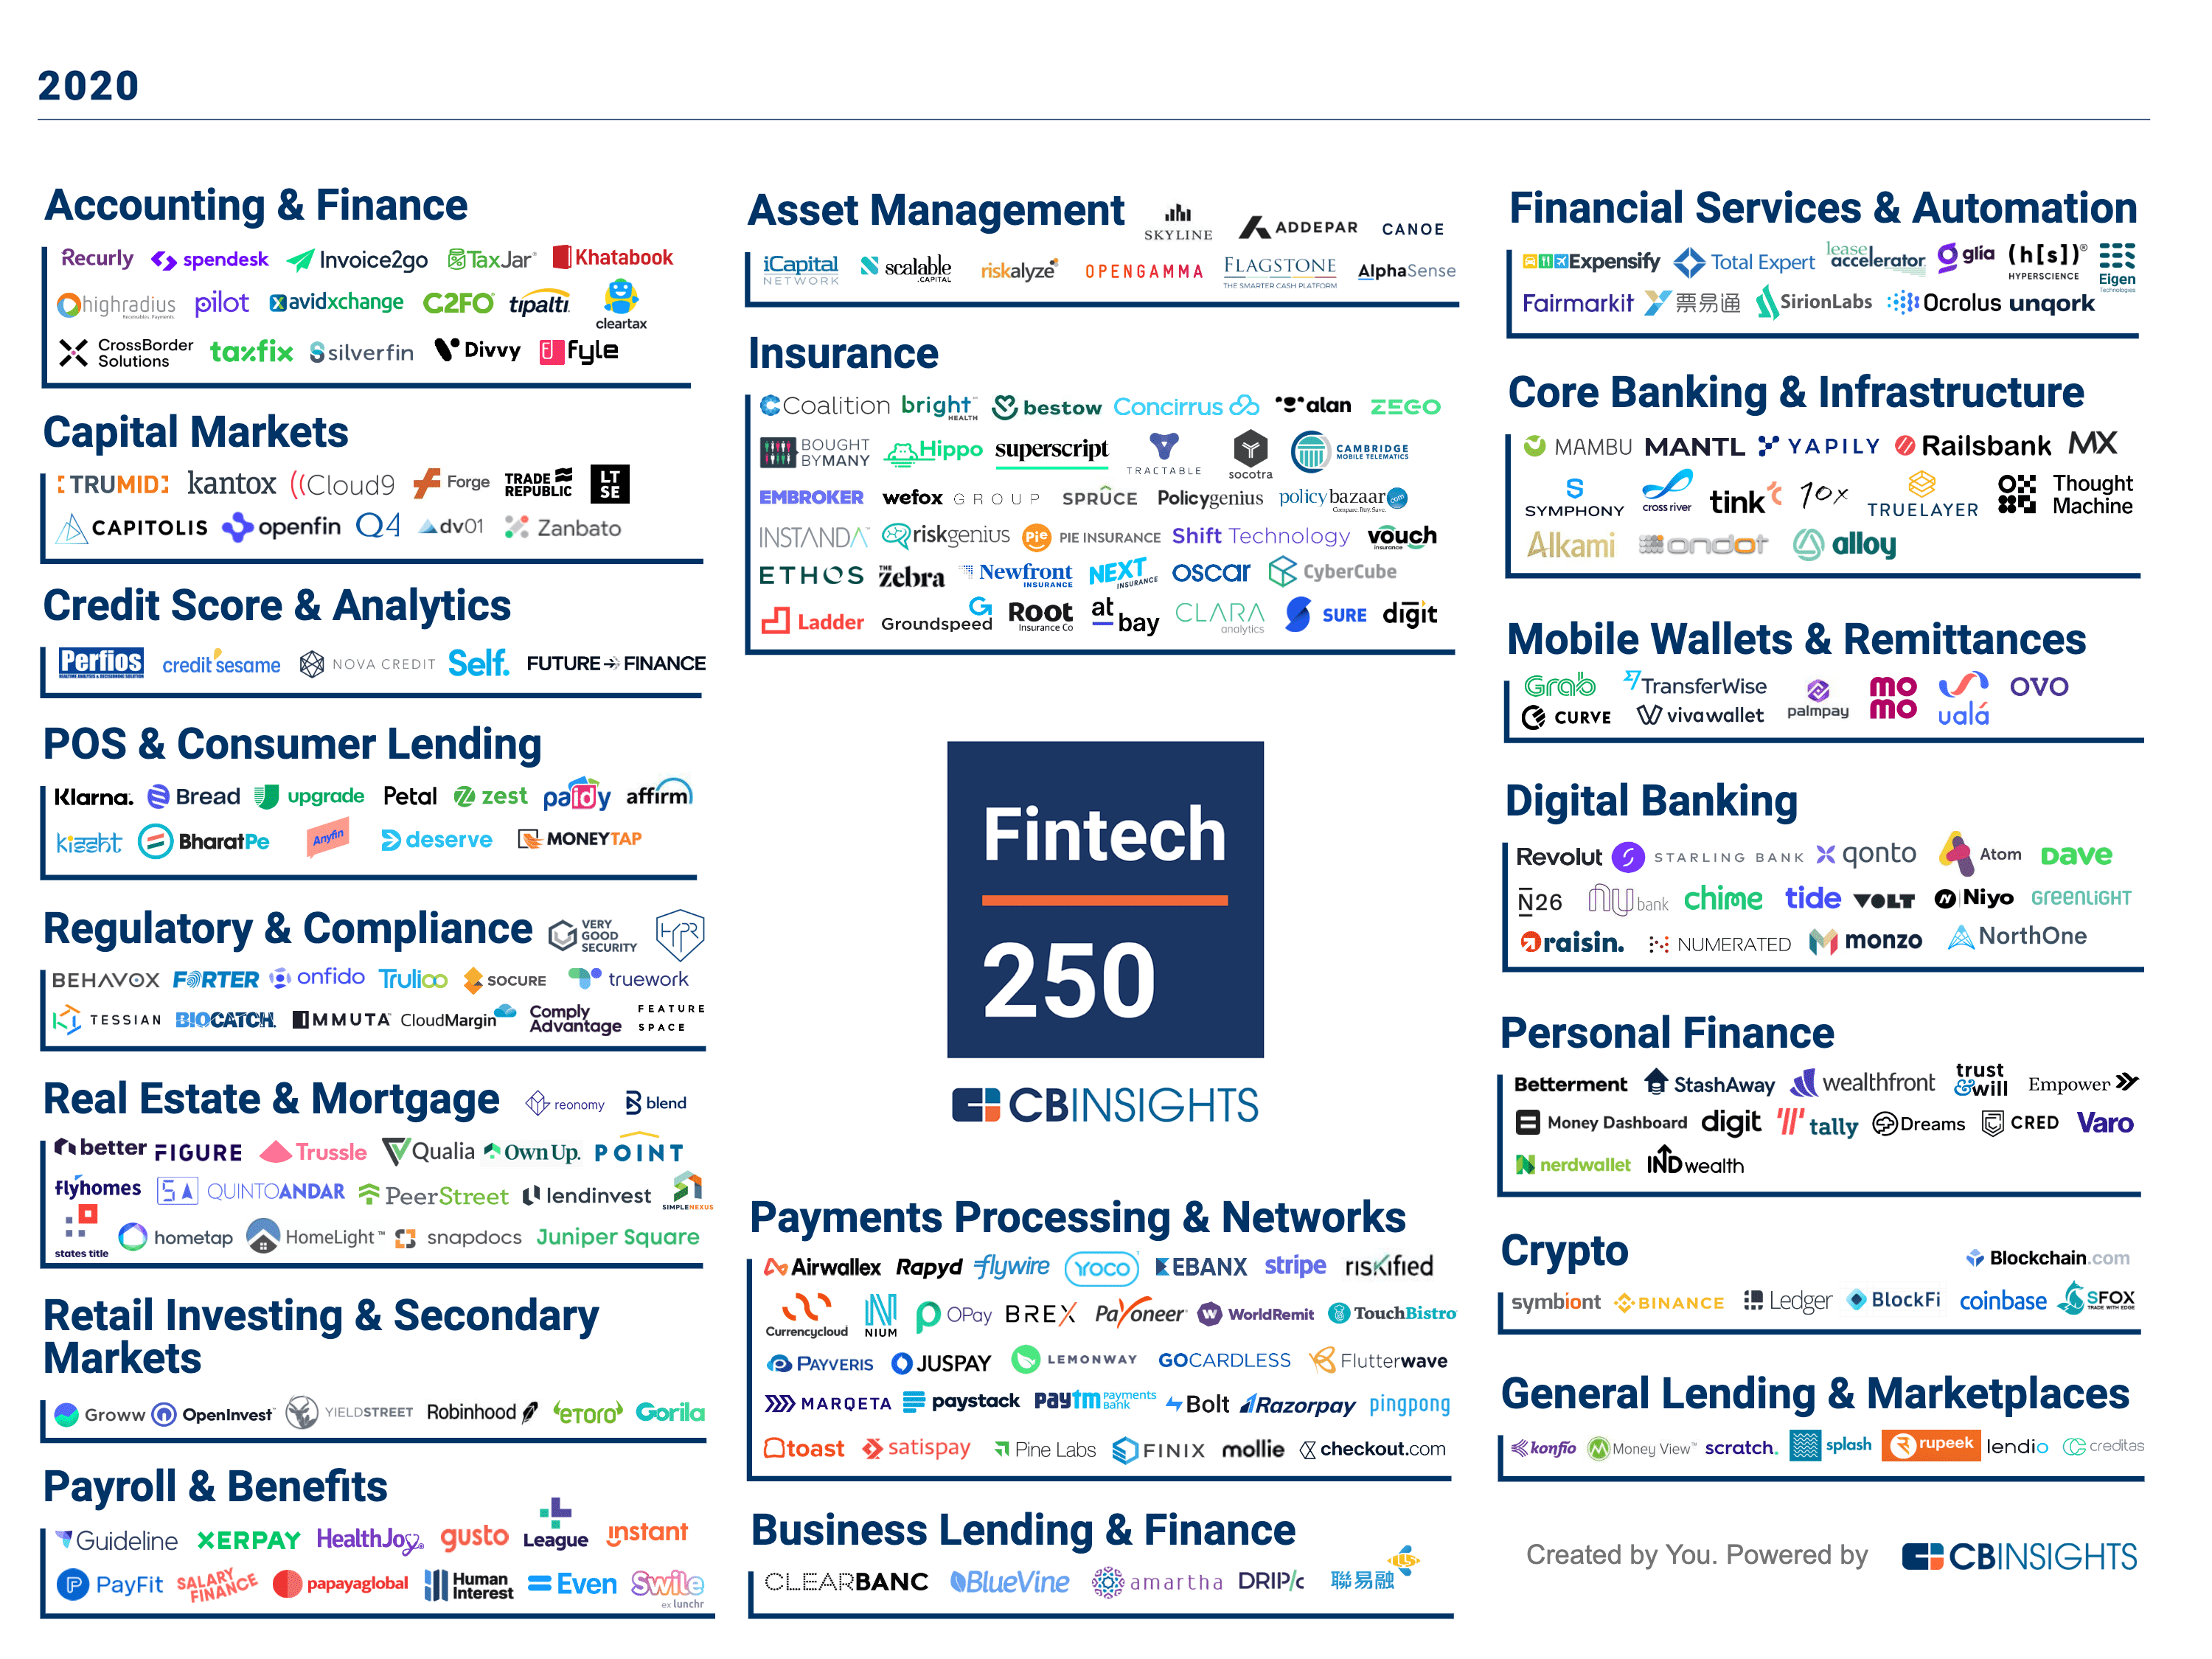 cb insights 250 startup fintech